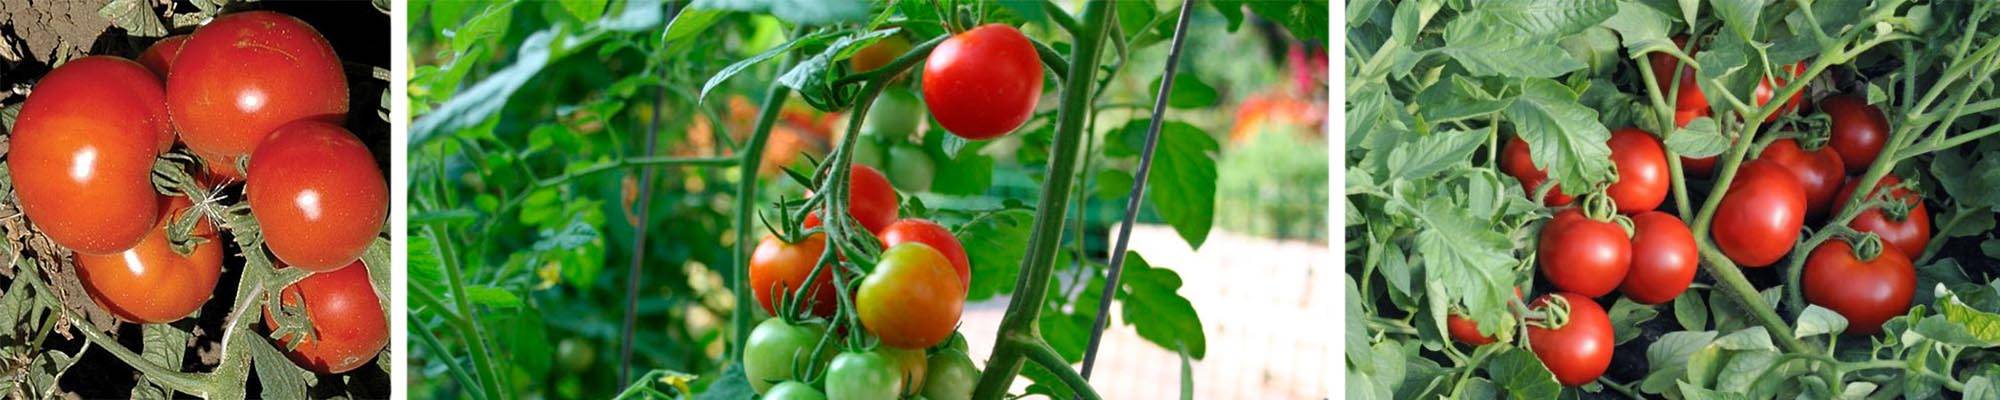 Томат «анюта f1»: описание и характеристика сорта, фото помидоров, особенности выращивания